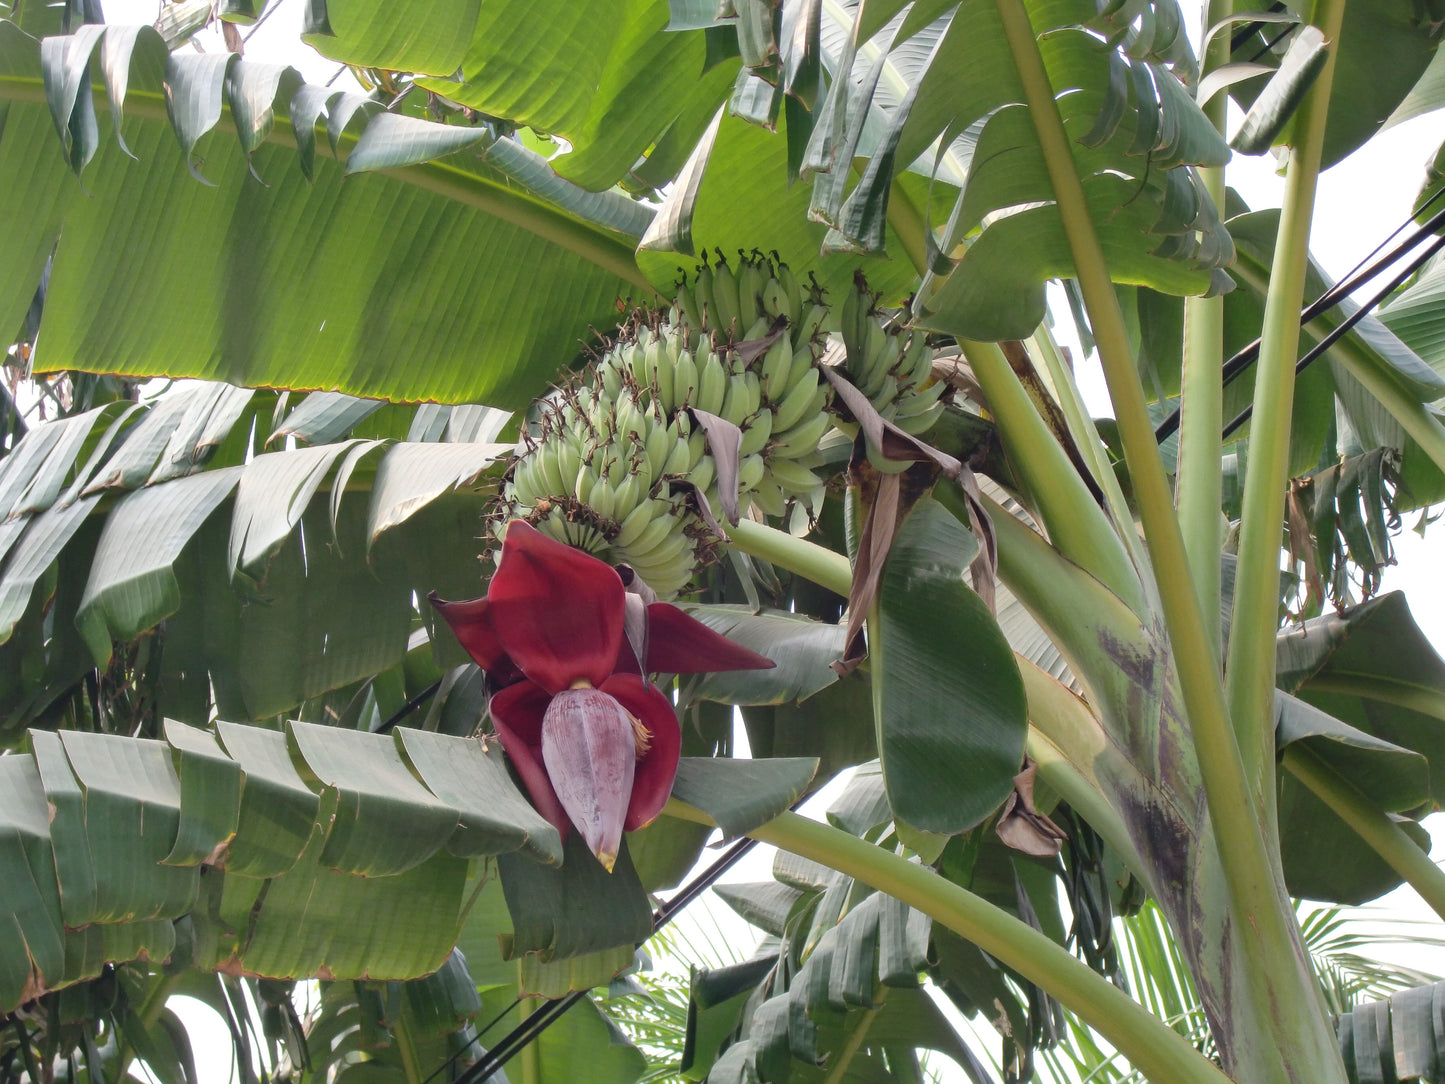 Wild Banana Musa acuminata 20 Seeds  USA Company